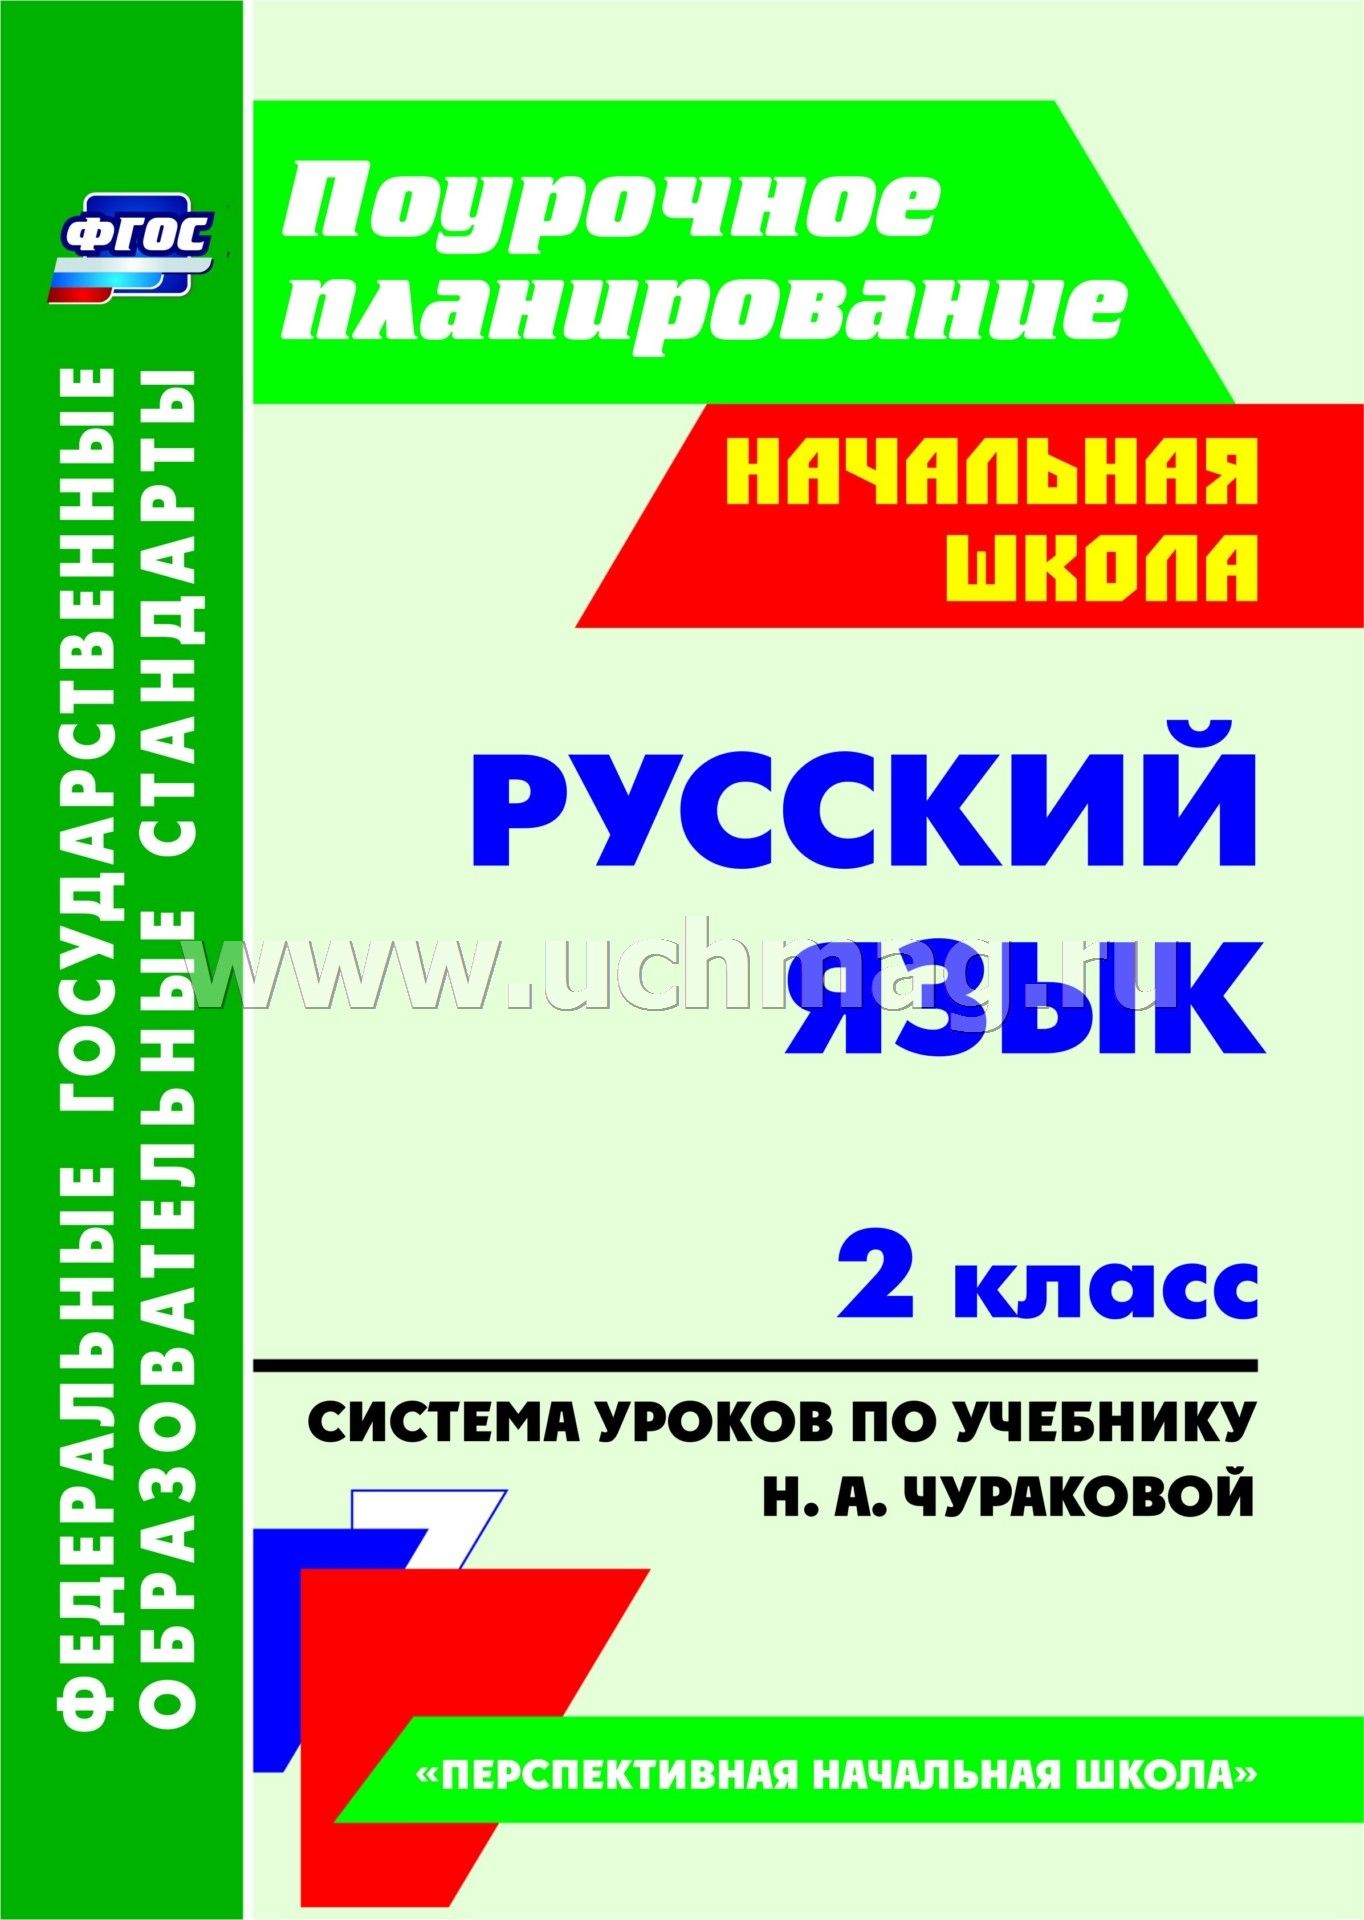 Подробный конспект урока по фгос пнш 4 класс русский язык